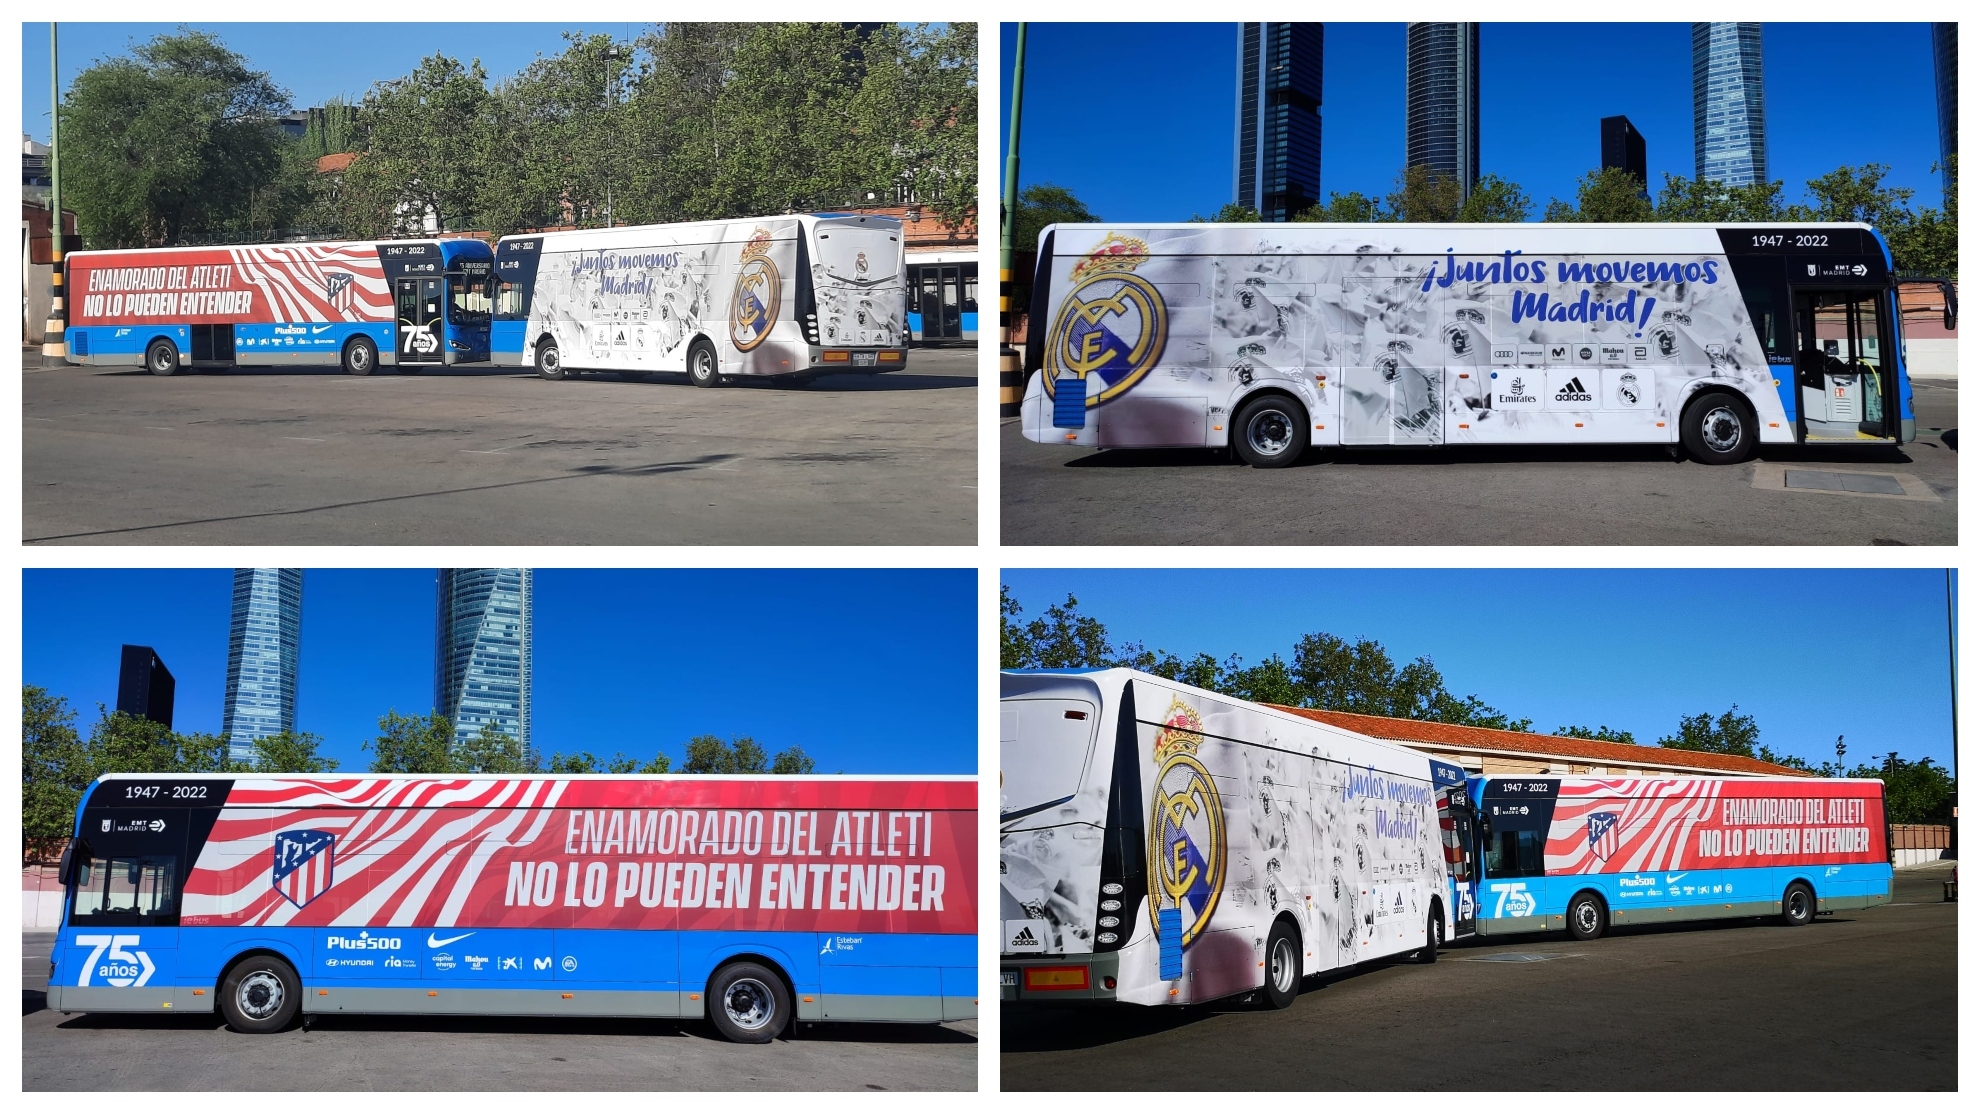 Así son los autobuses de la EMT que llevarán al derbi a los jugadores de Atlético y Real Madrid: todos los detalles